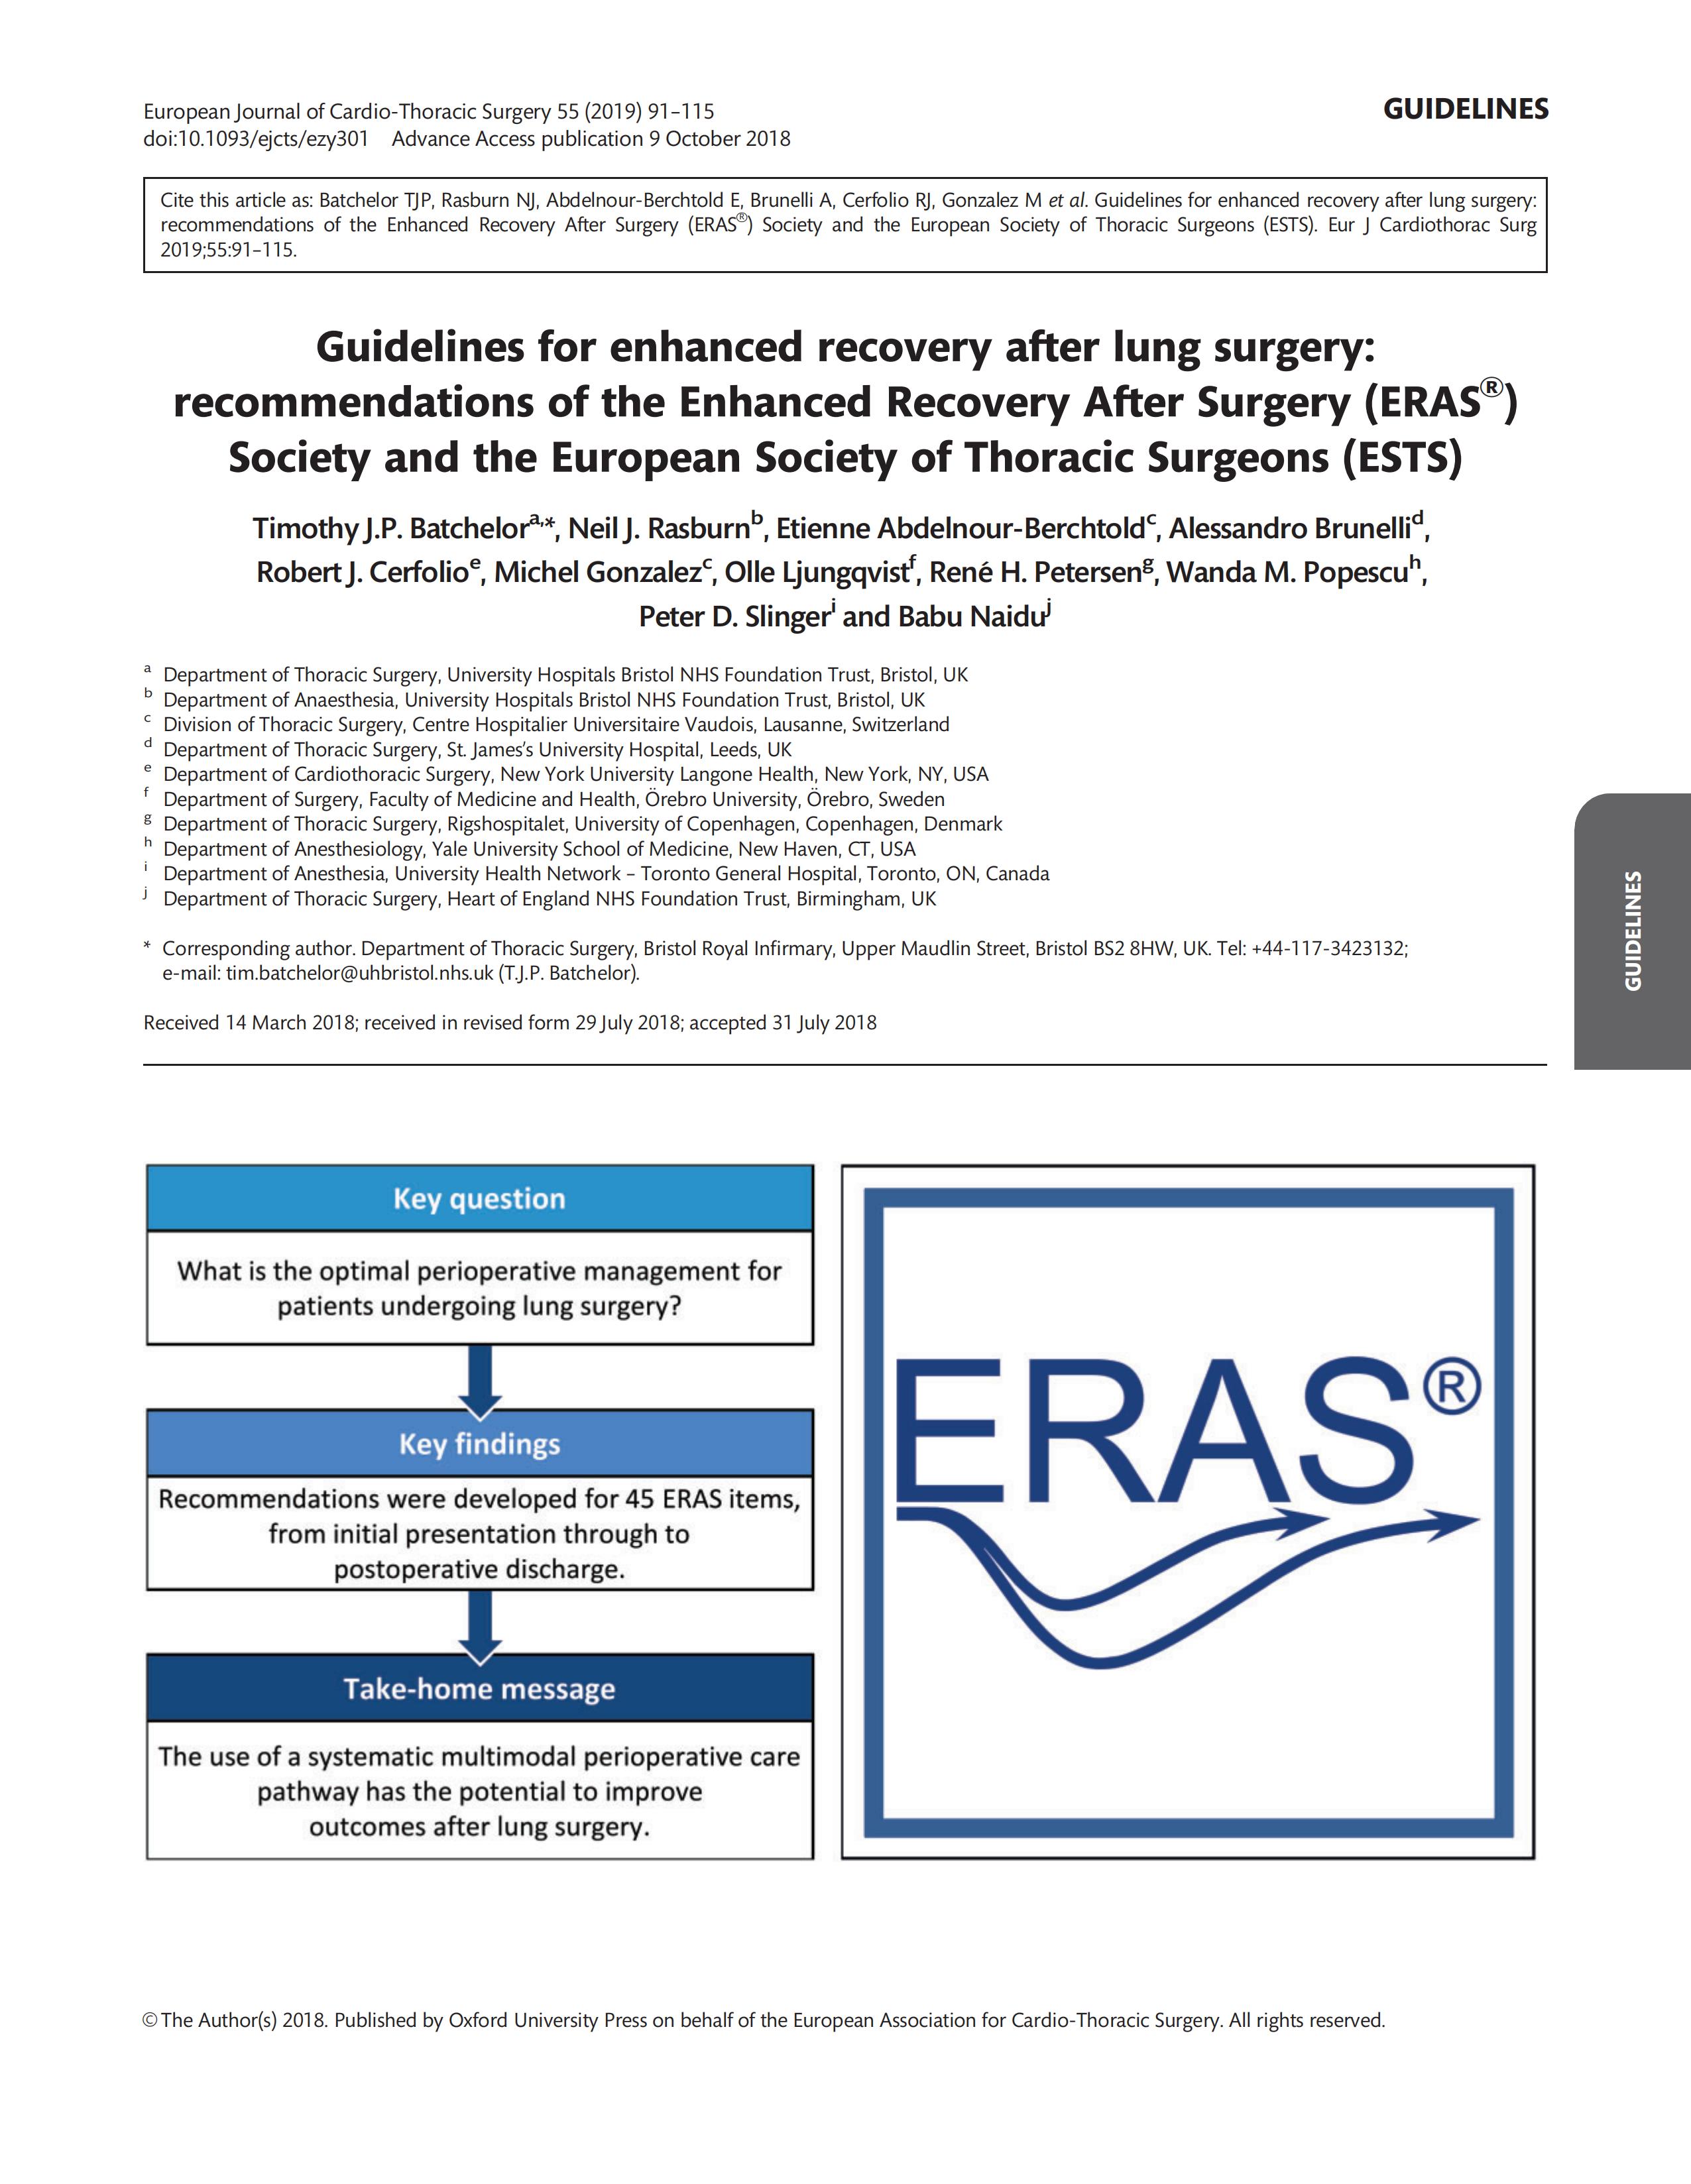 肺部手术后加速康复指南：加速康复外科 (ERAS ® ) 协会和欧洲胸外科医师协会 (ESTS) 的建议